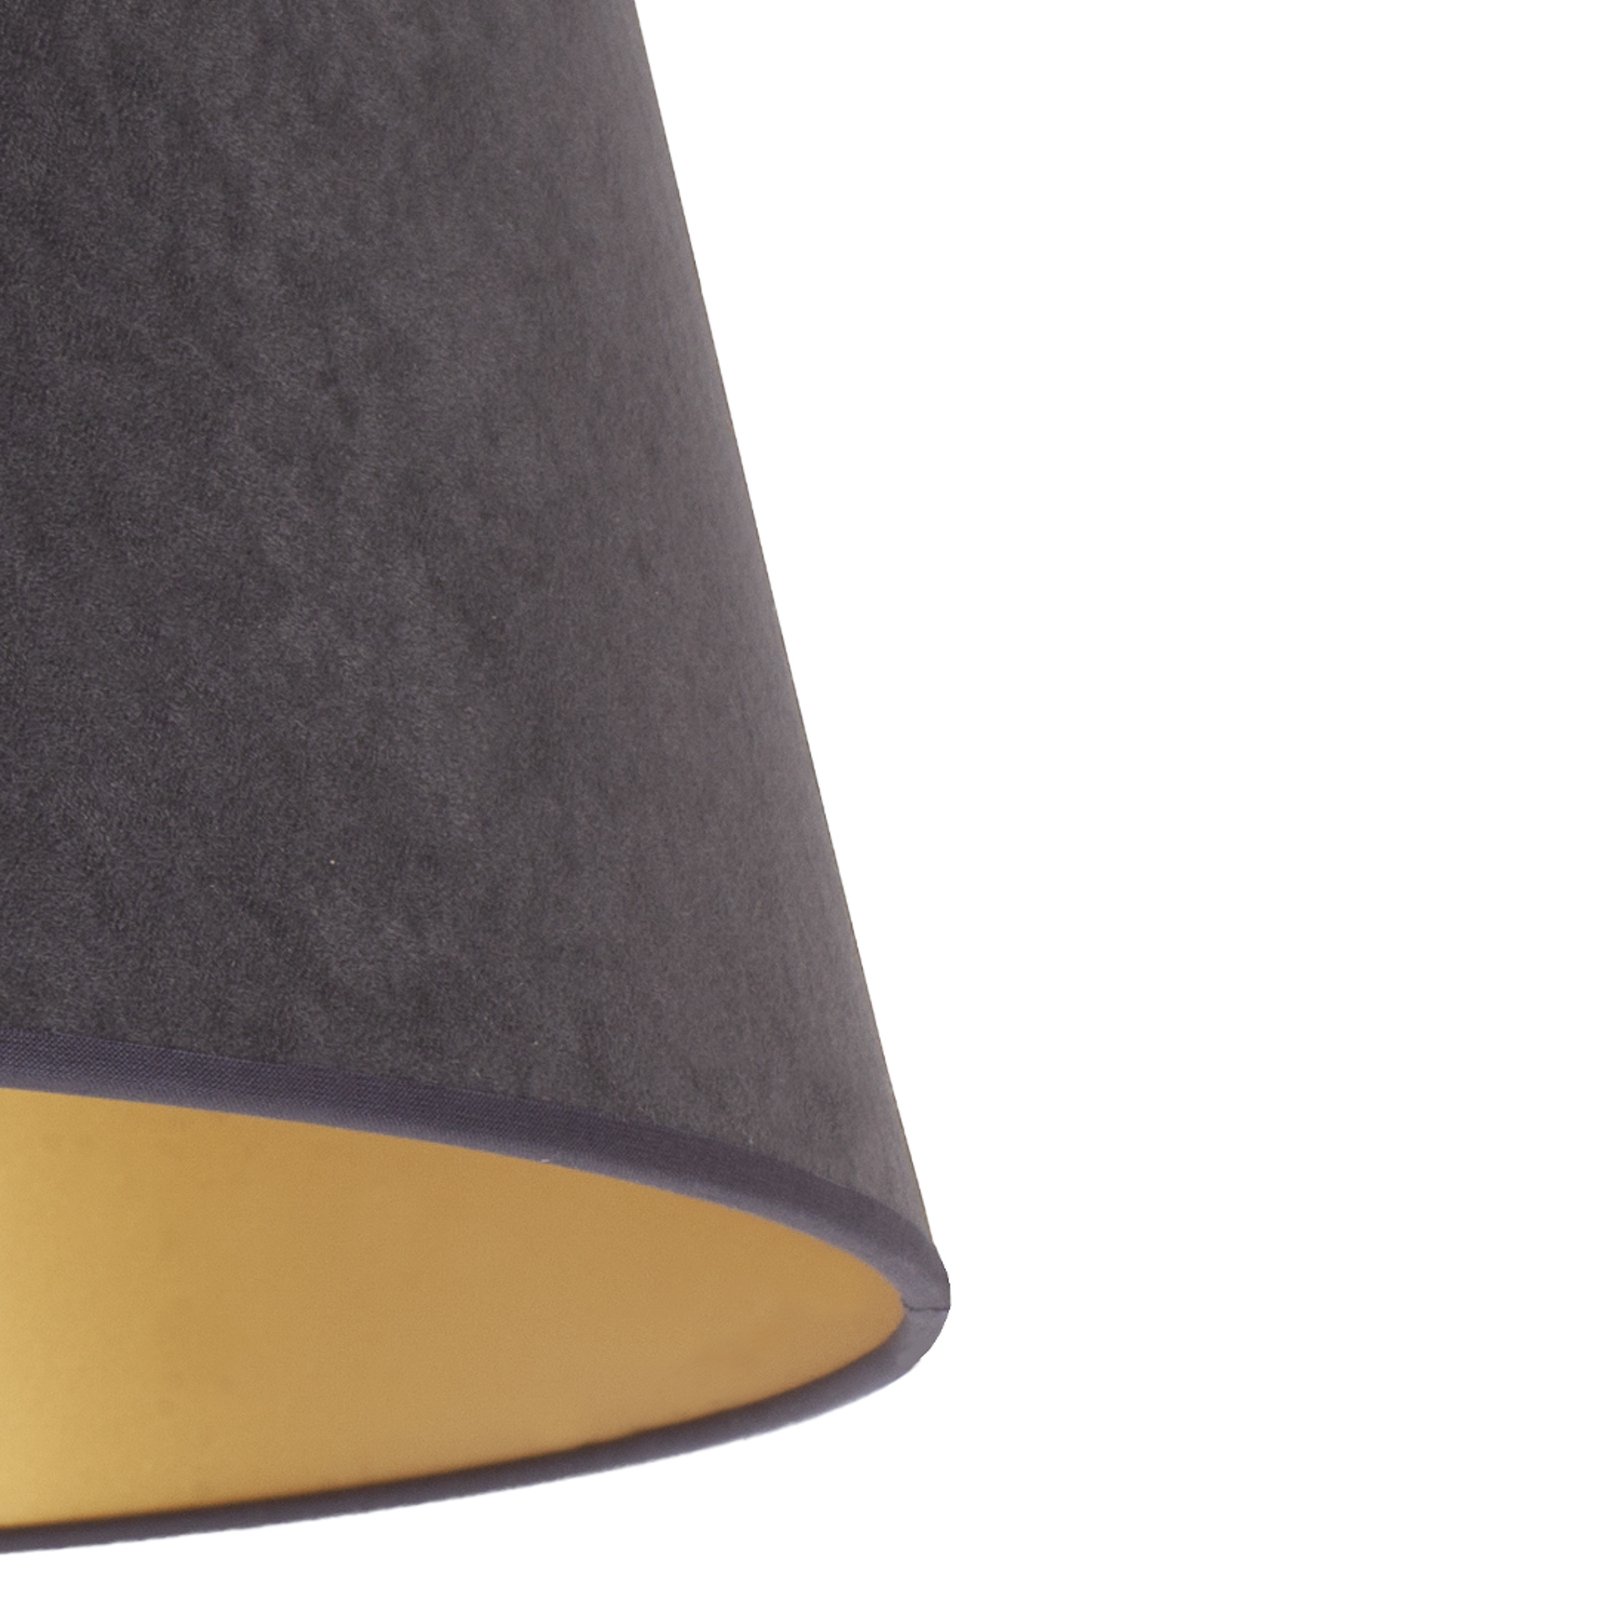 Cone lampeskærm, højde 18 cm, grafit/guld